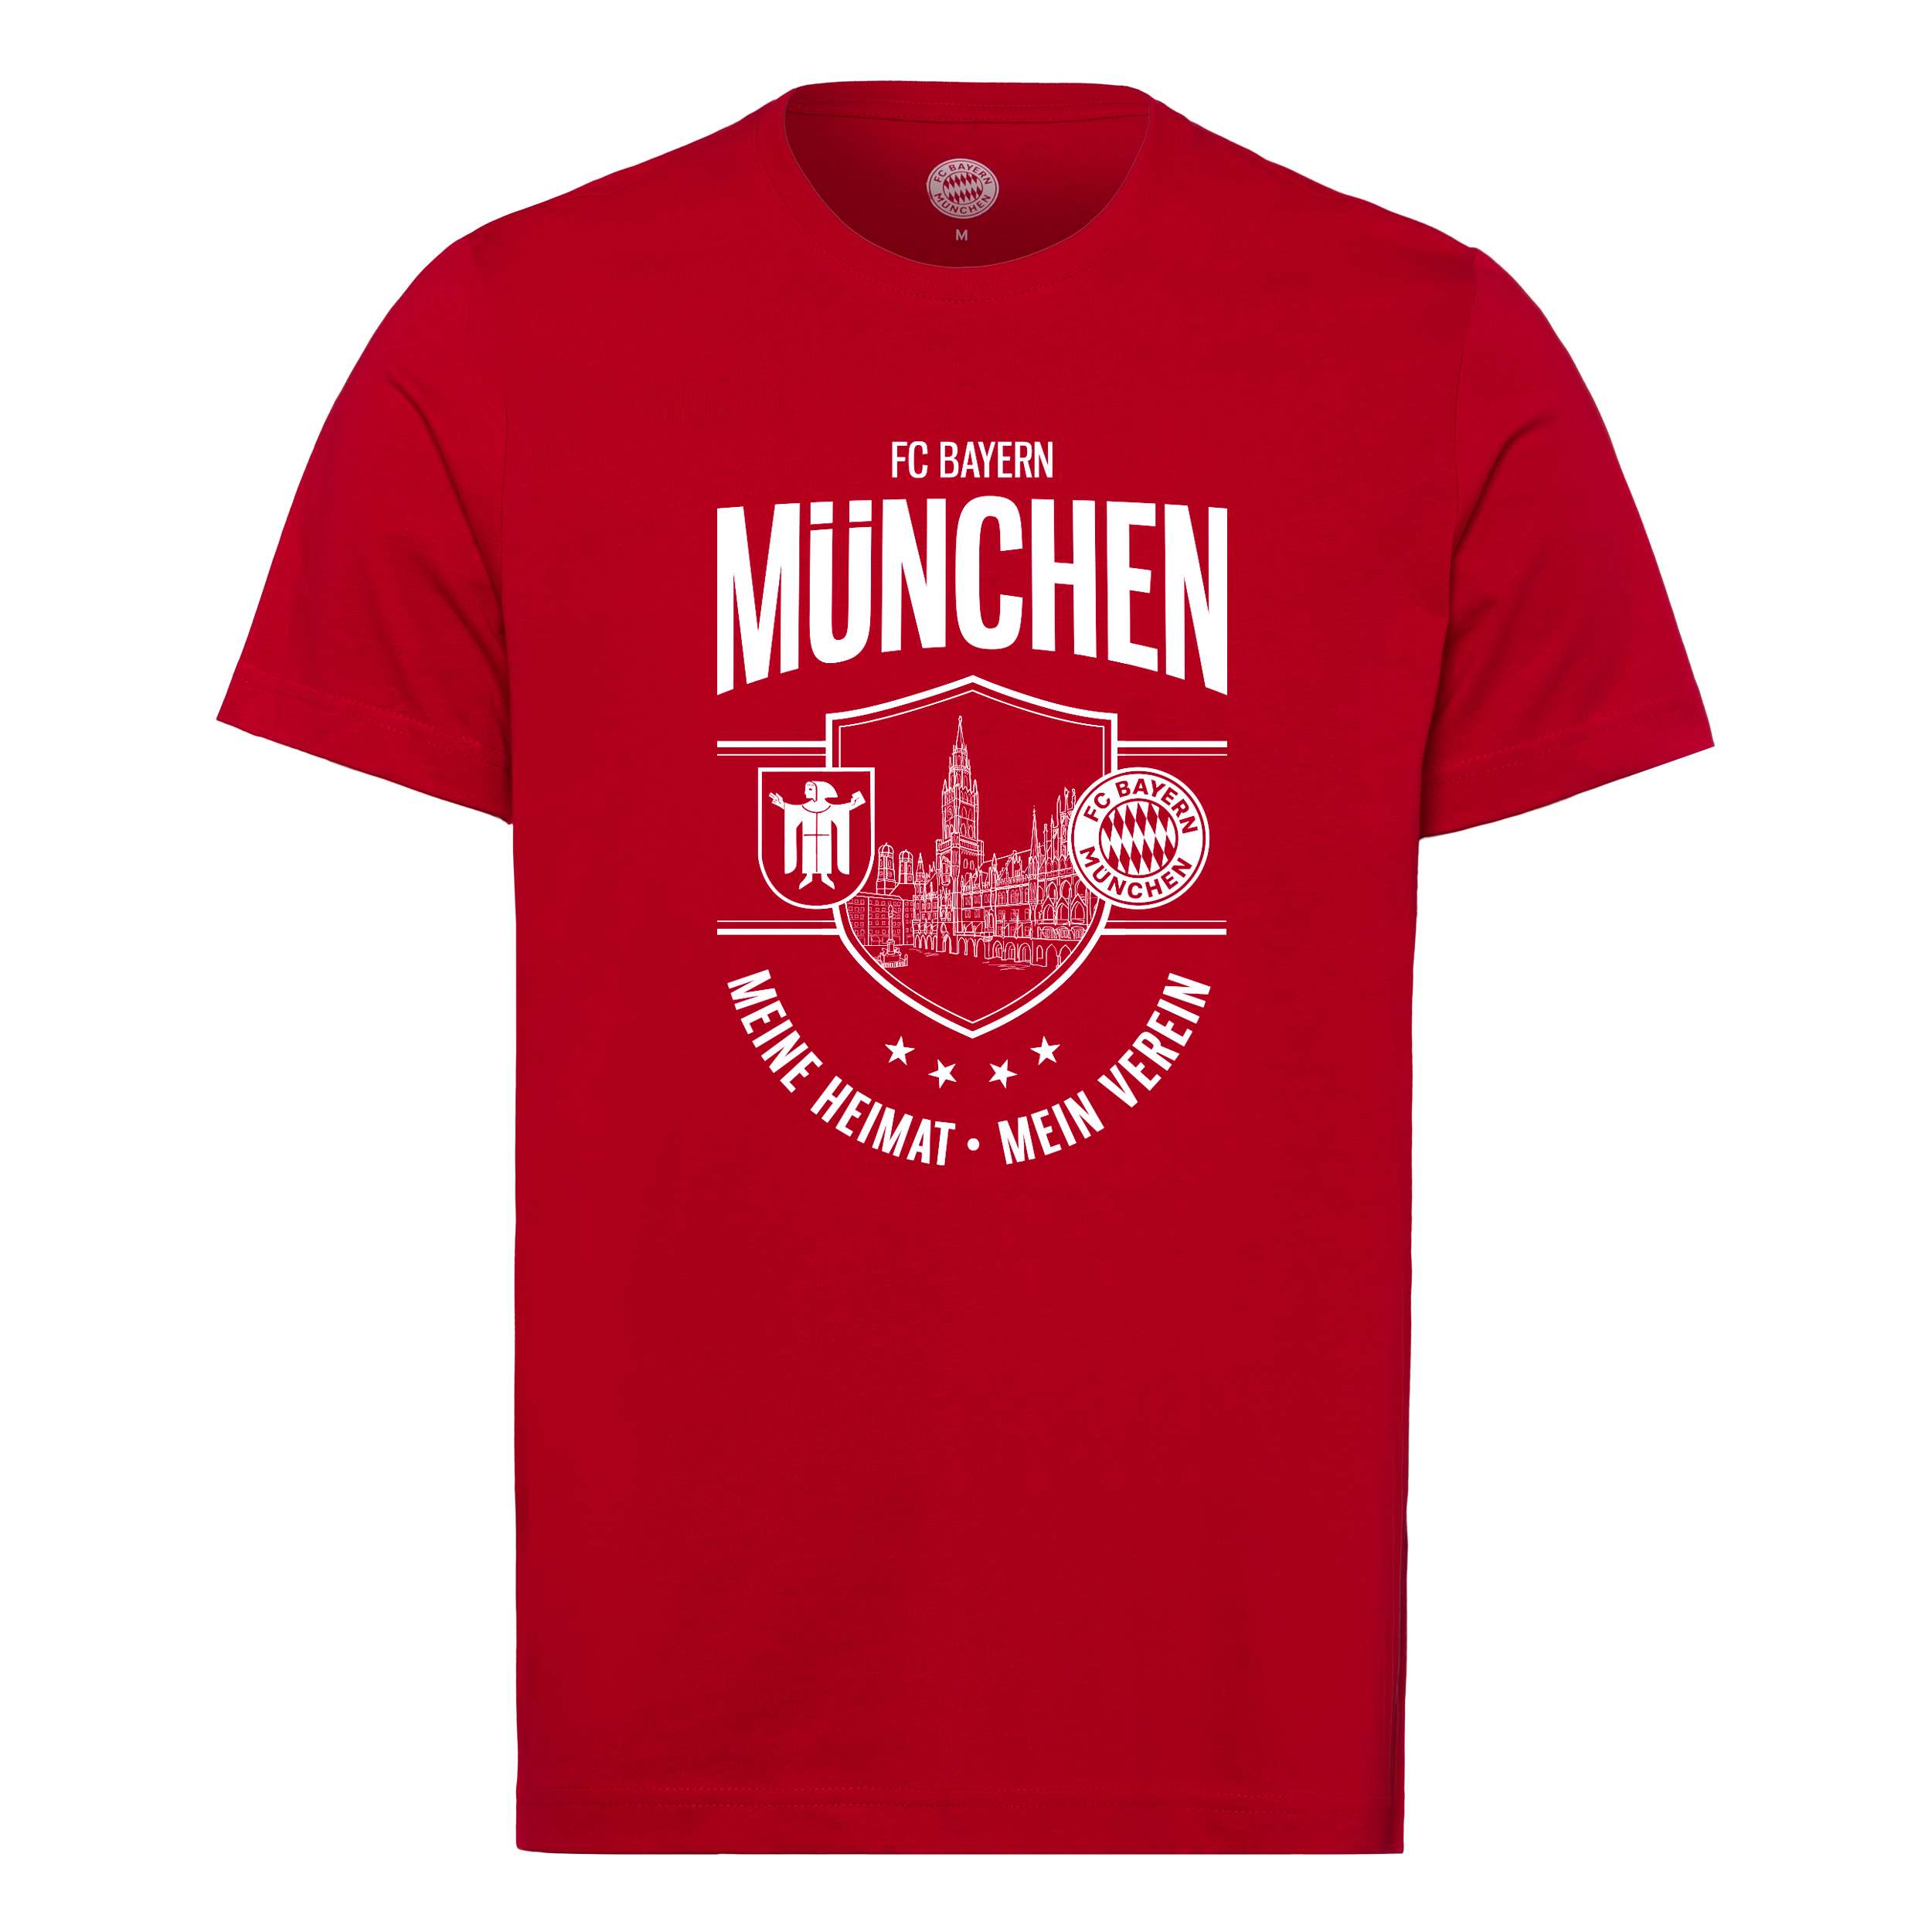 FC Bayern Muenchen t-shirt "Meine Heimat, Mein Verein" - red